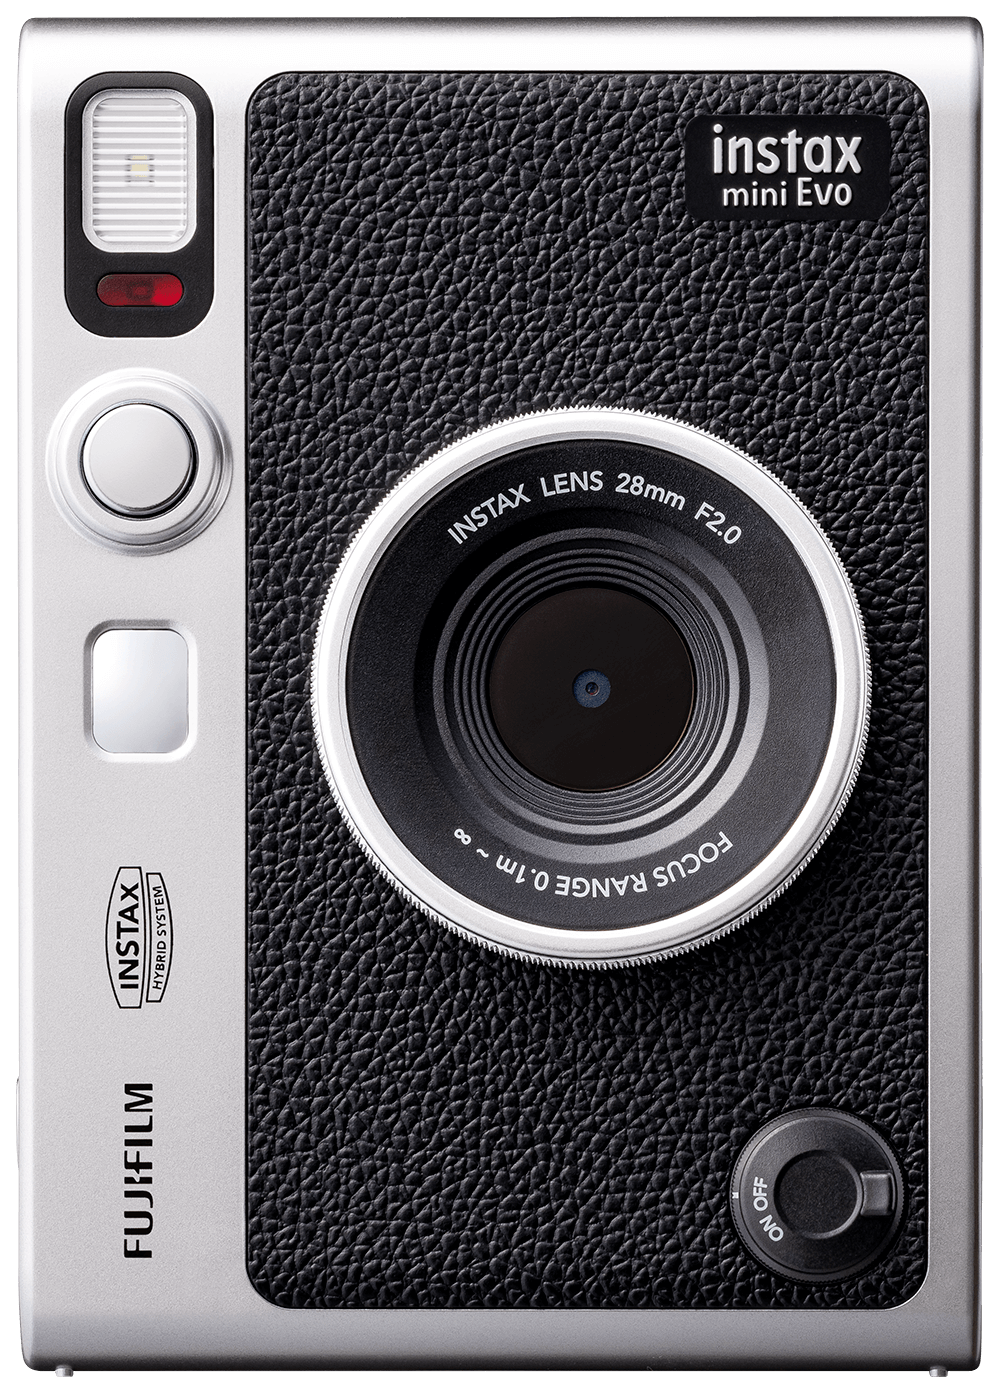 ハイブリッドインスタントカメラ” instax mini Evo| instax mini 